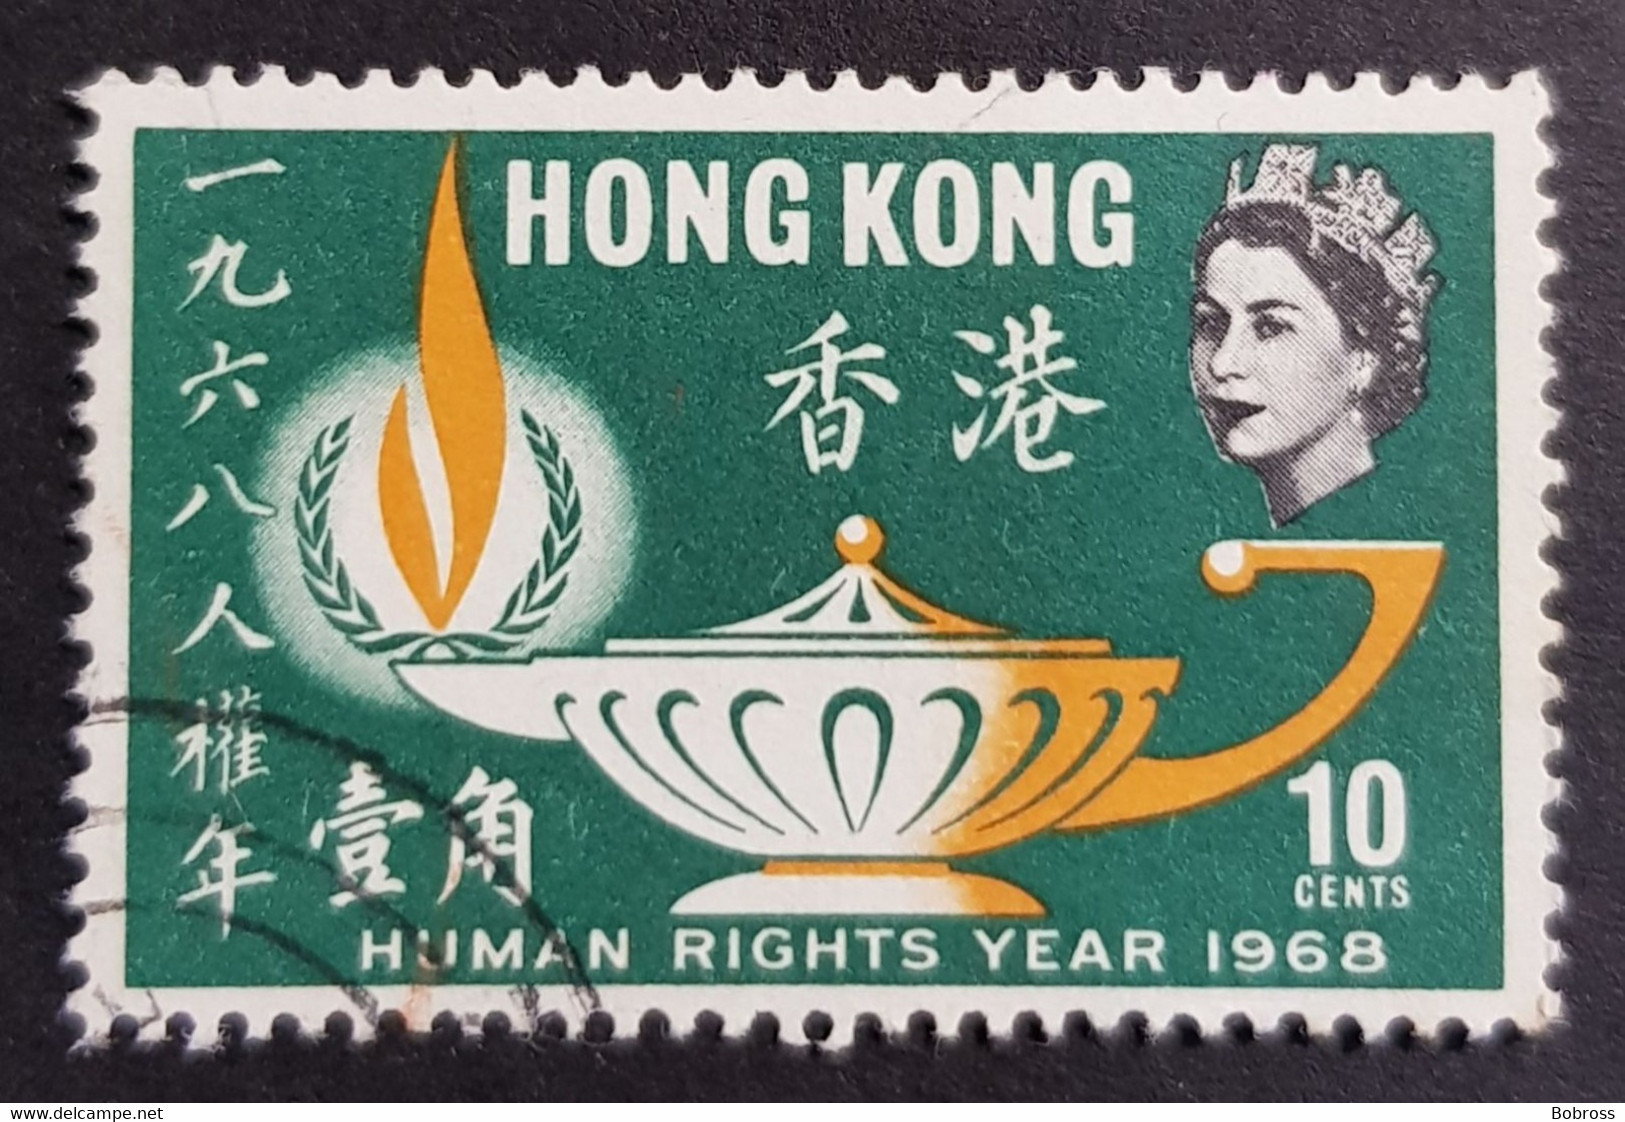 1968 Human Rights Year, Hong Kong, China, Used - Used Stamps